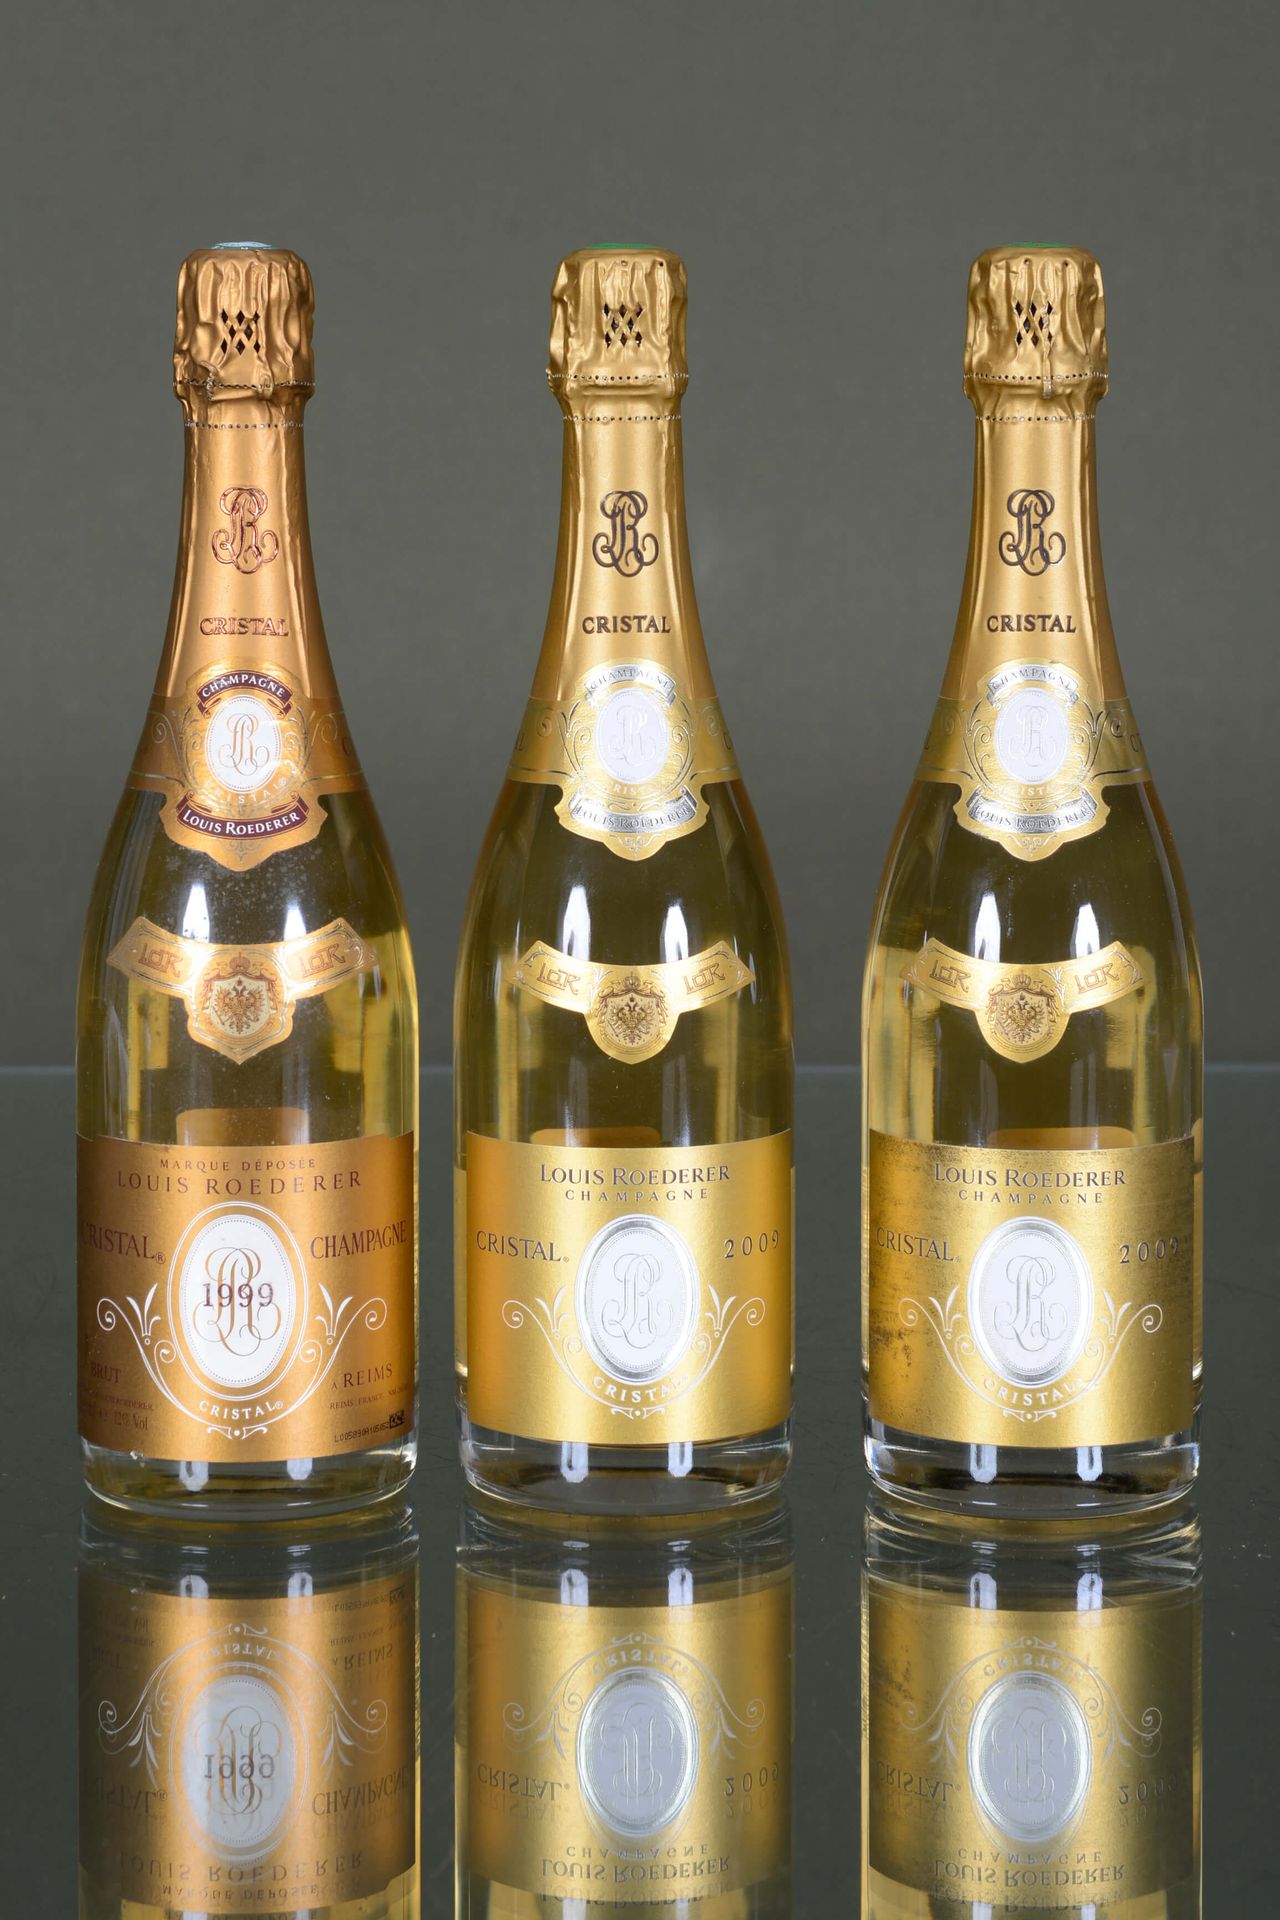 Champagne Cristal Roederer 1 Flasche, 1999 + 2 Flaschen, 2009

Zustandsbericht: &hellip;